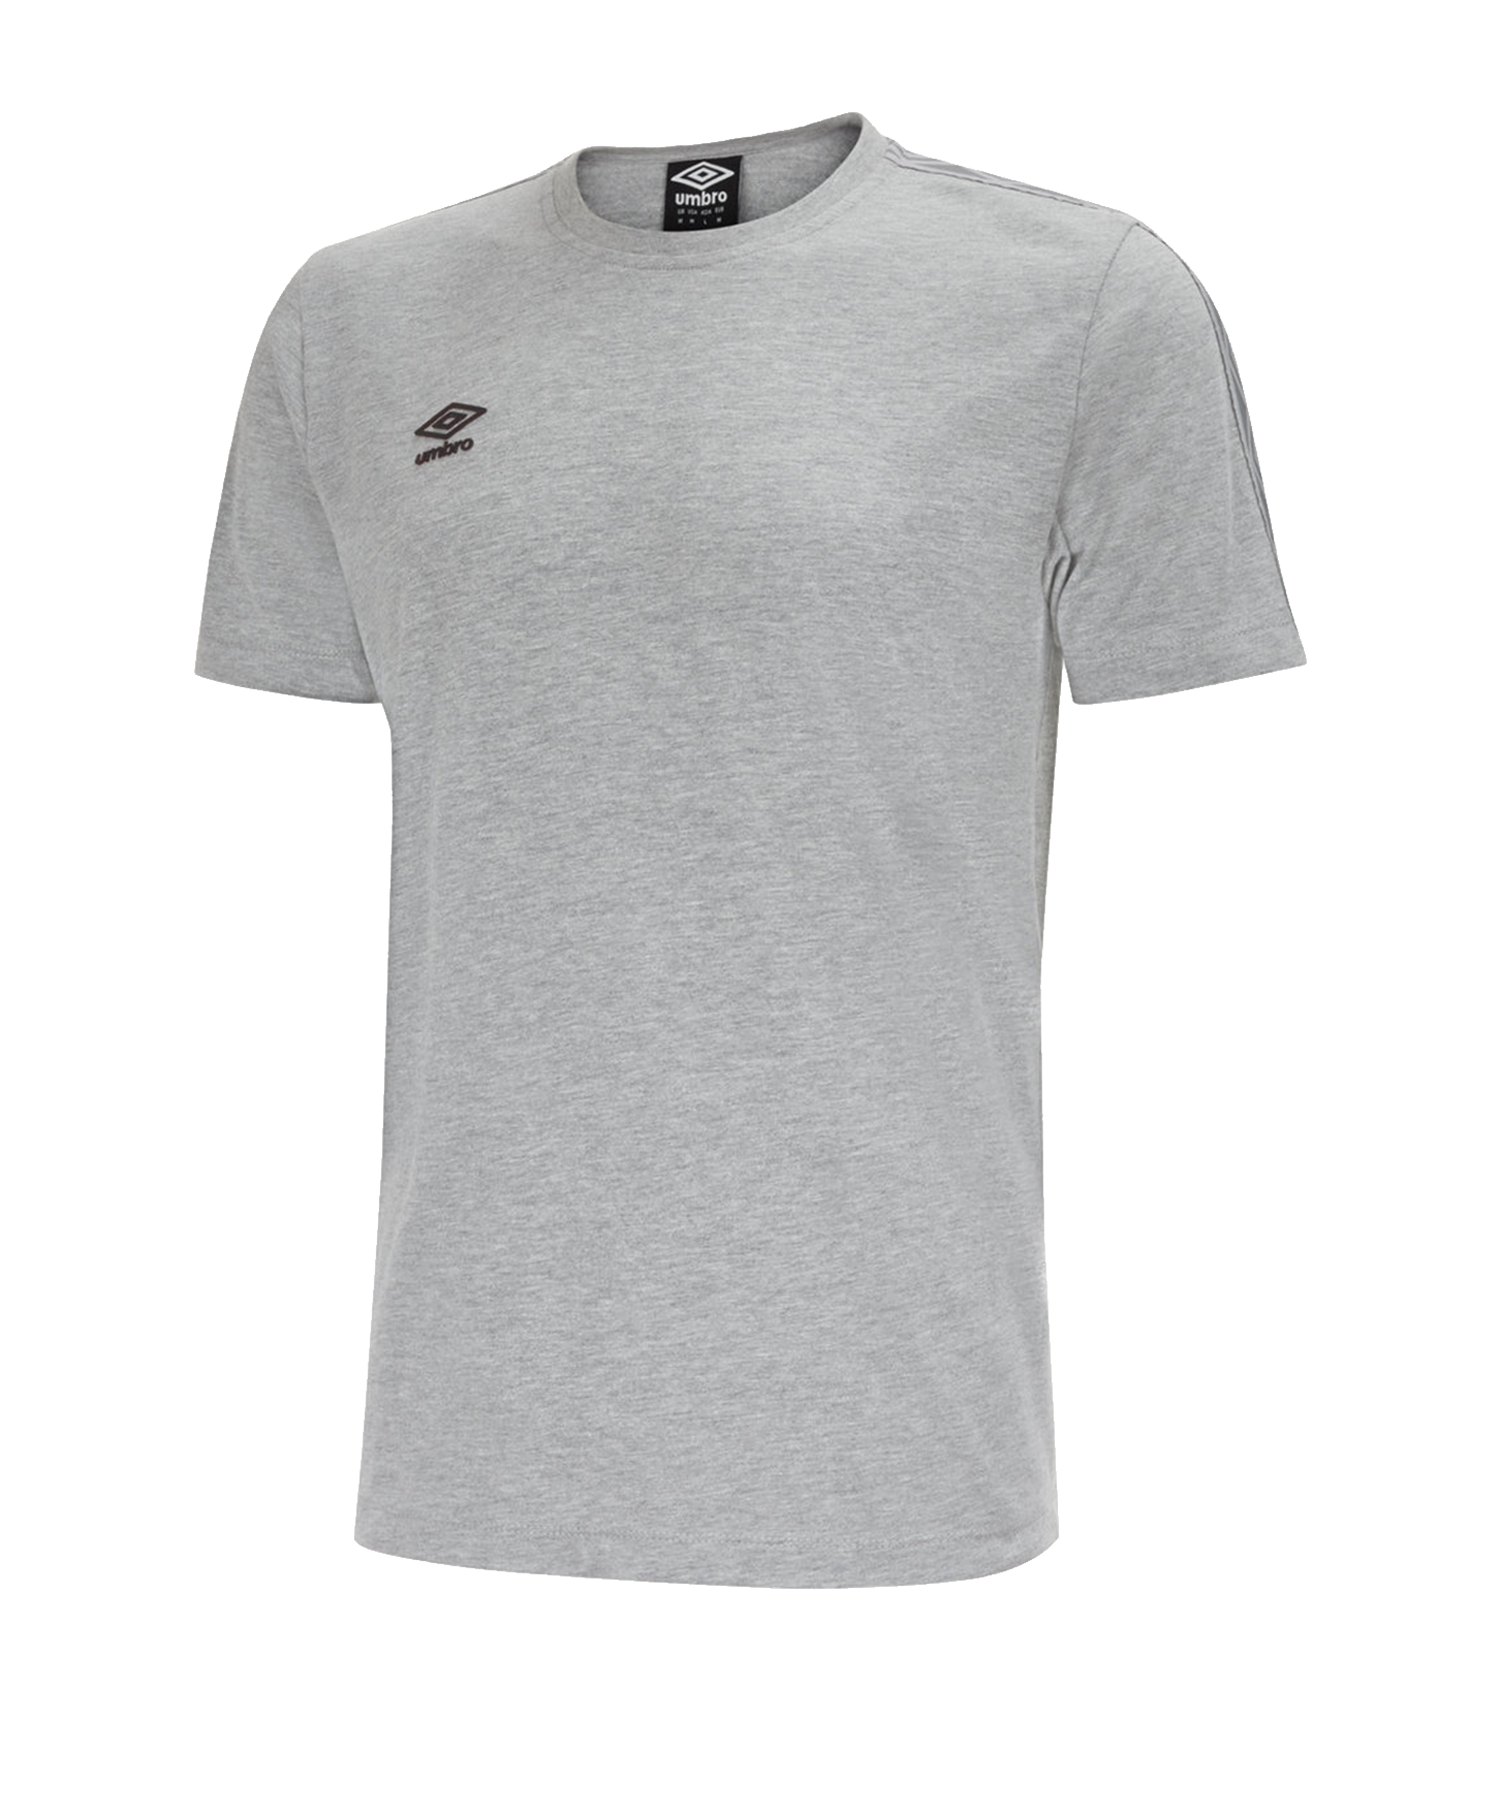 Umbro Pro Taped Tee T-Shirt Grau F263 - Grau